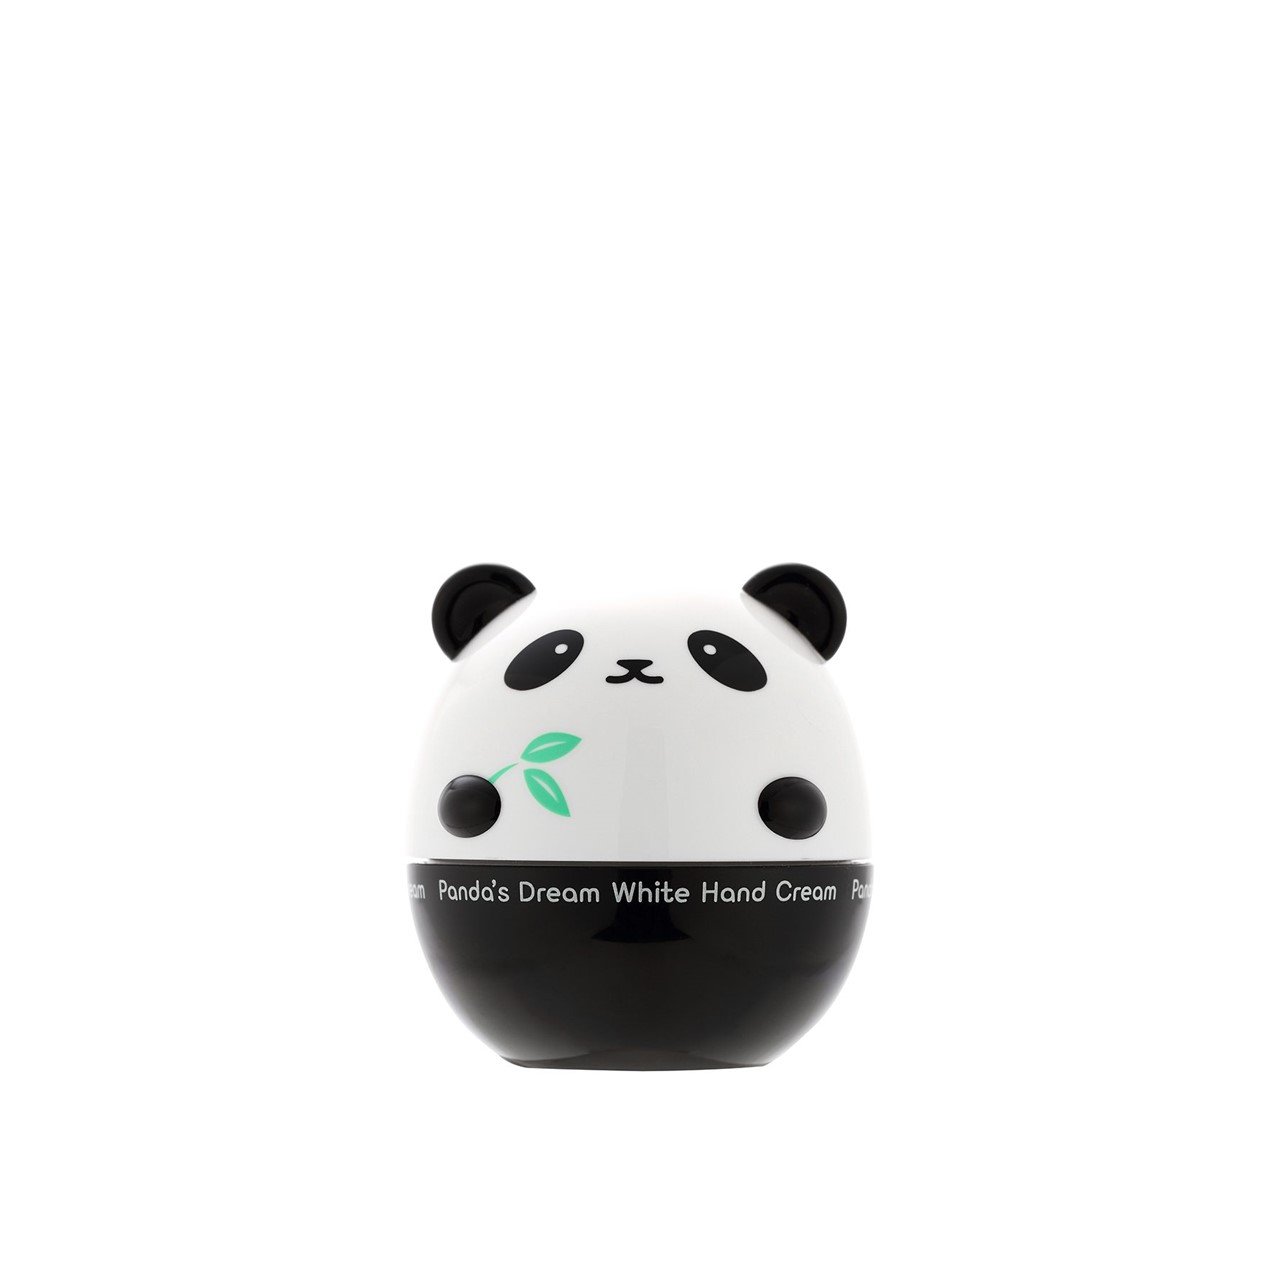 TONYMOLY Panda's Dream White Hand Cream 30g (1.06oz)